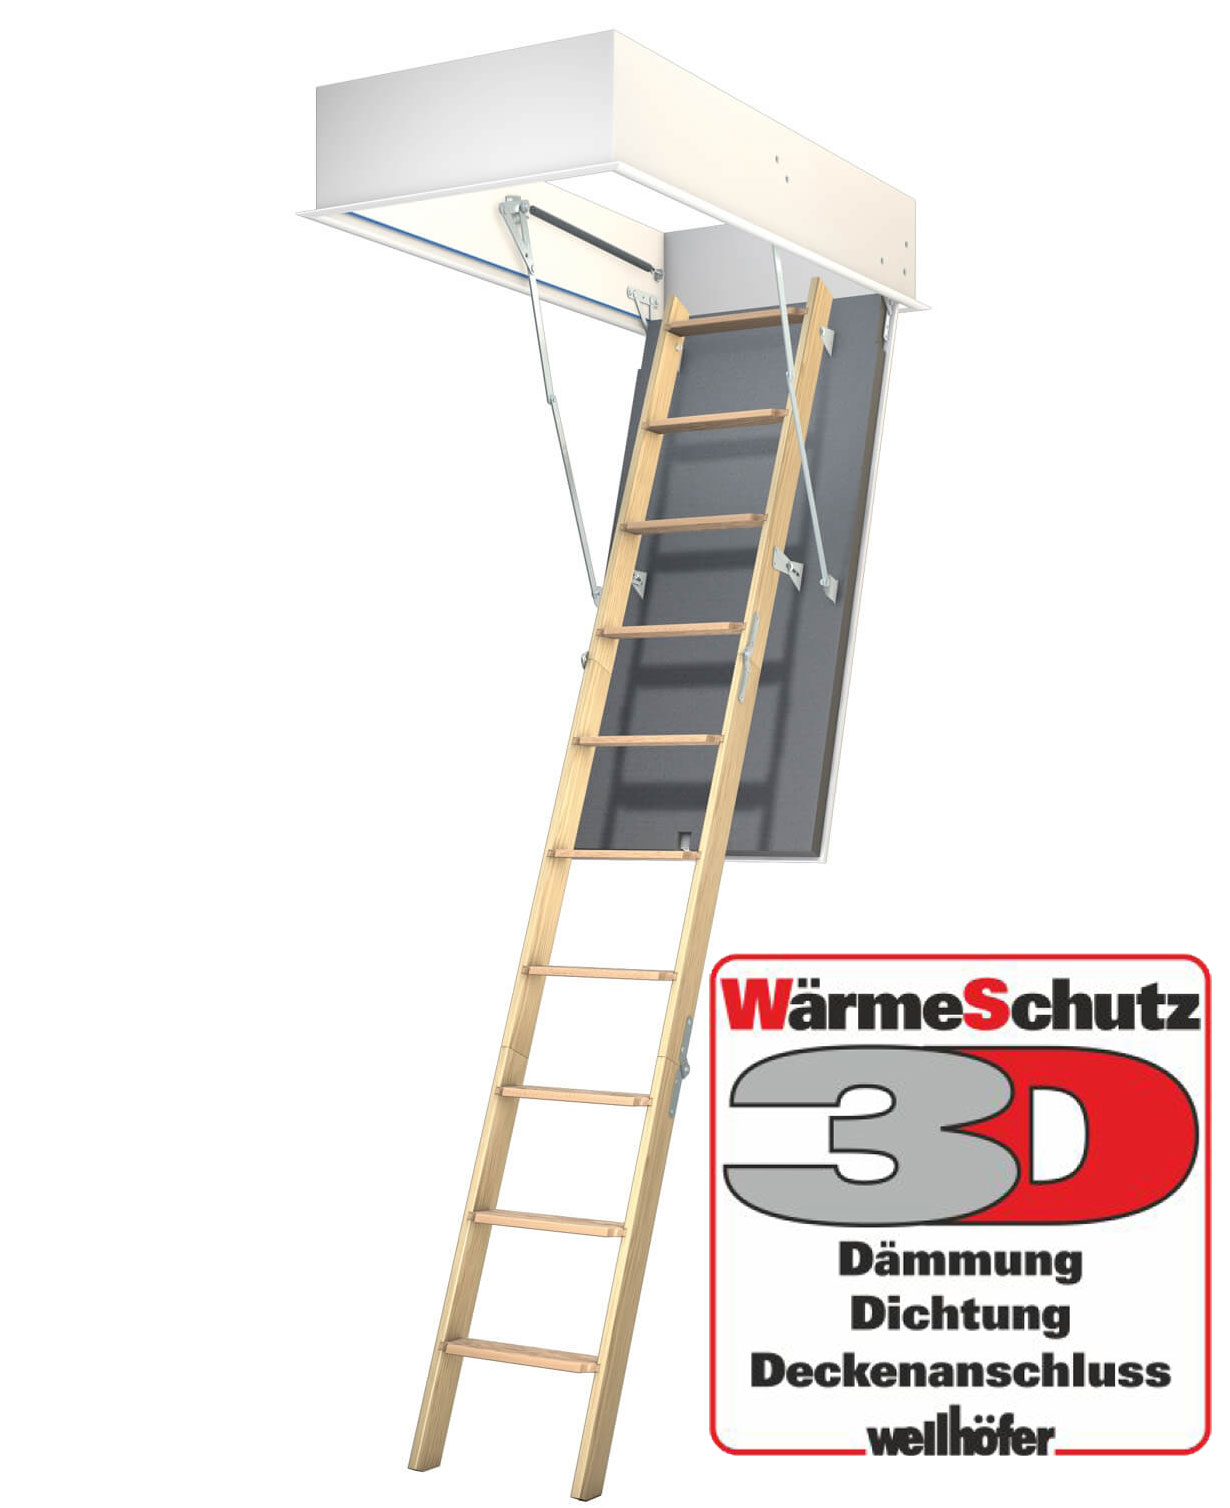 Wellhöfer Bodentreppe Gutholz + 3D Wärmeschutz 248-259 cm 120 x 70